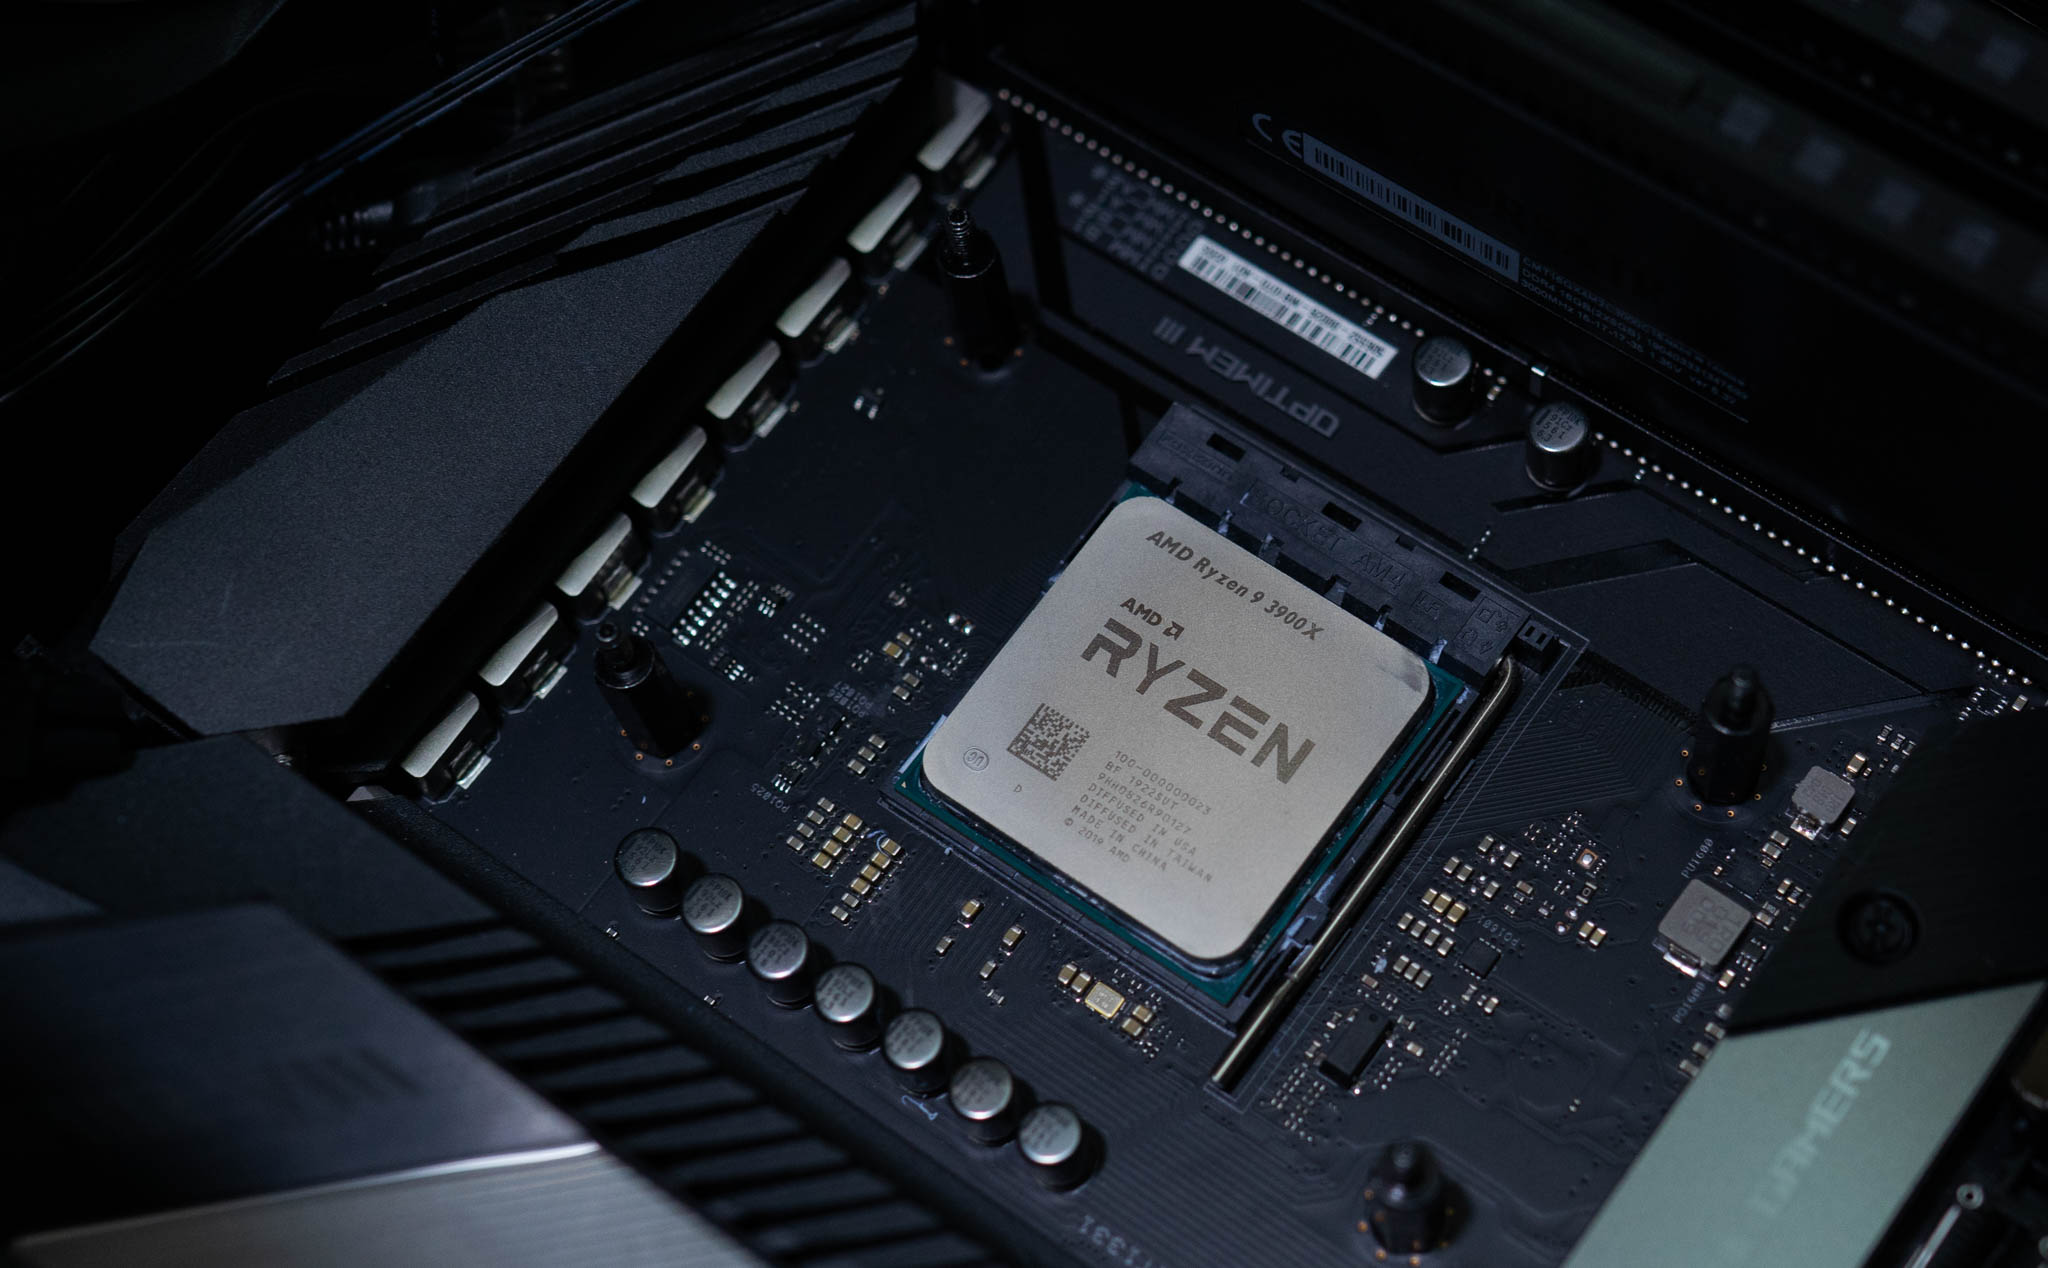 Đánh giá CPU AMD Ryzen 9 3900X: Hiệu năng quá xuất sắc cho mức giá 13 triệu, áp đảo Core i9-9900K